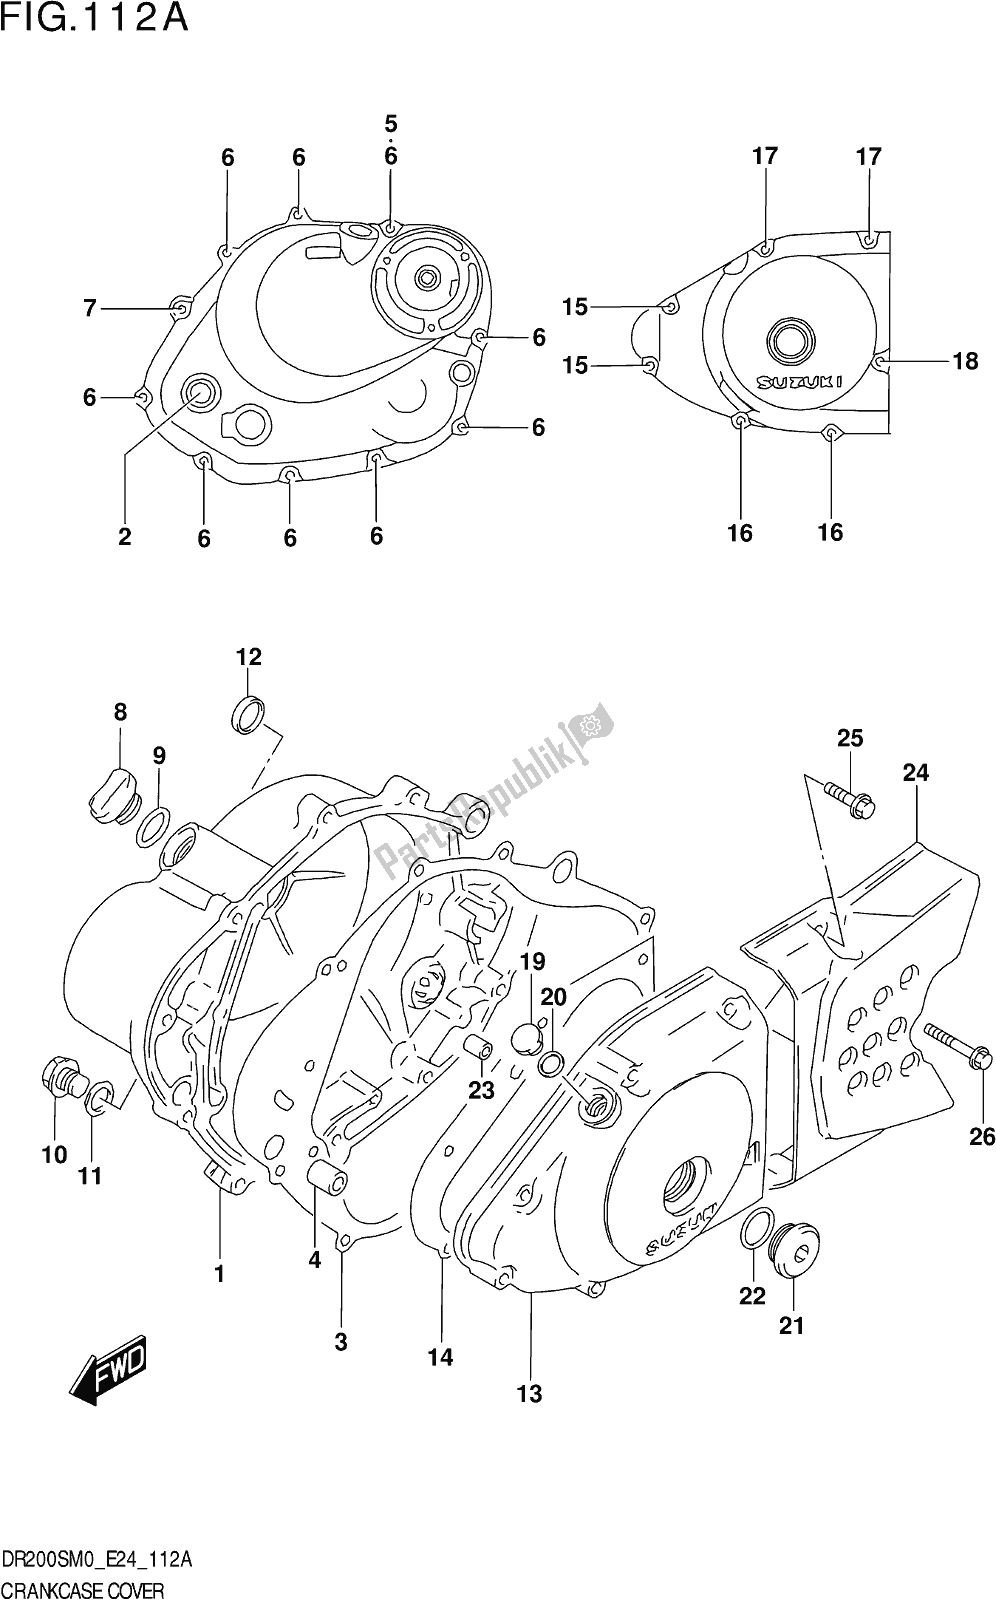 Alle onderdelen voor de Fig. 112a Crankcase Cover van de Suzuki DR 200S 2020